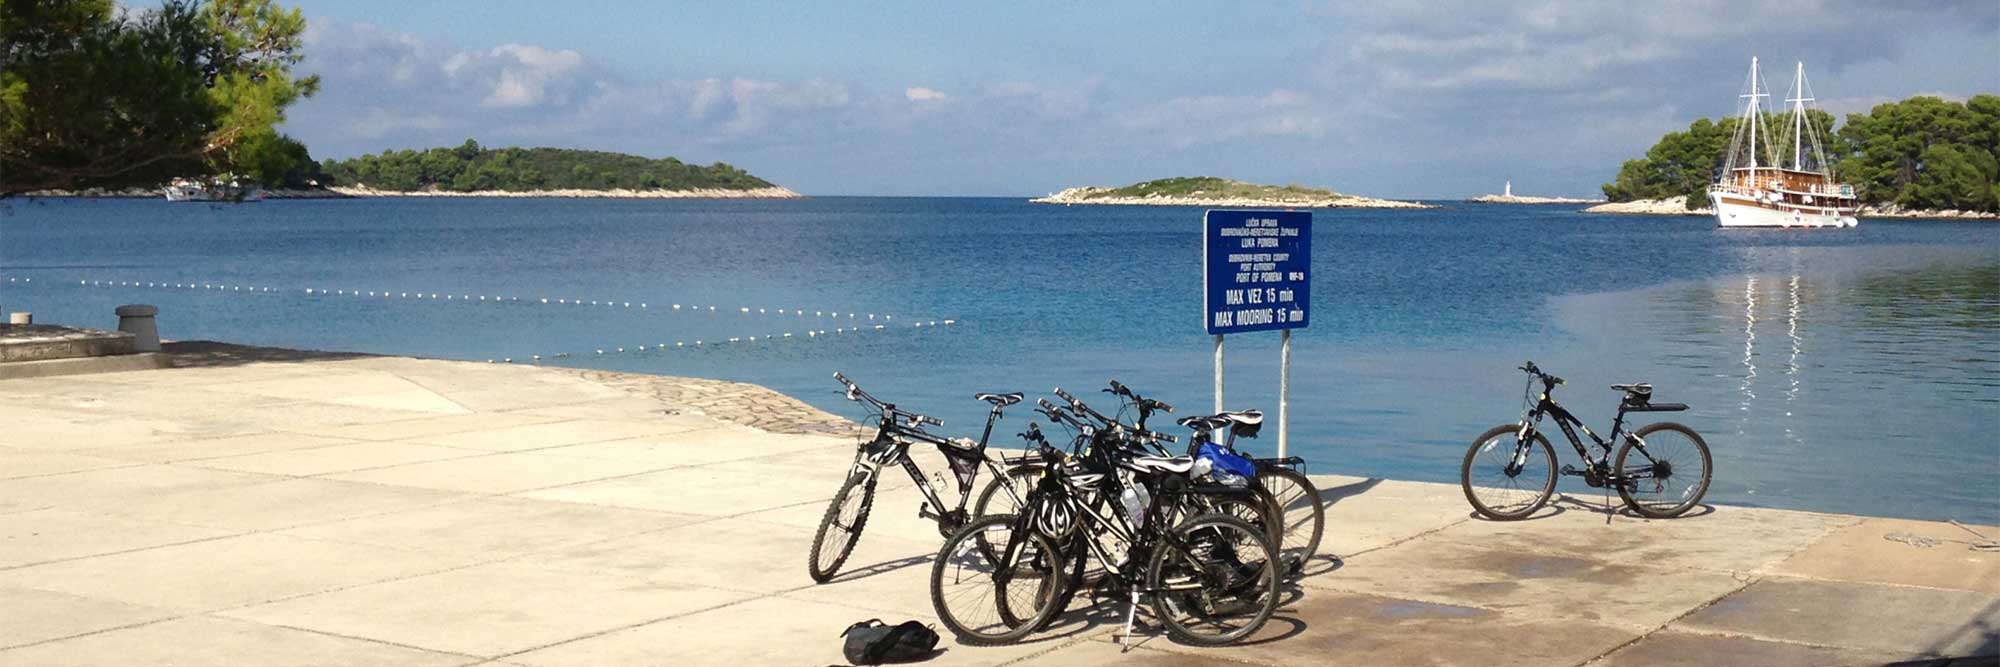 bikes beside a lake